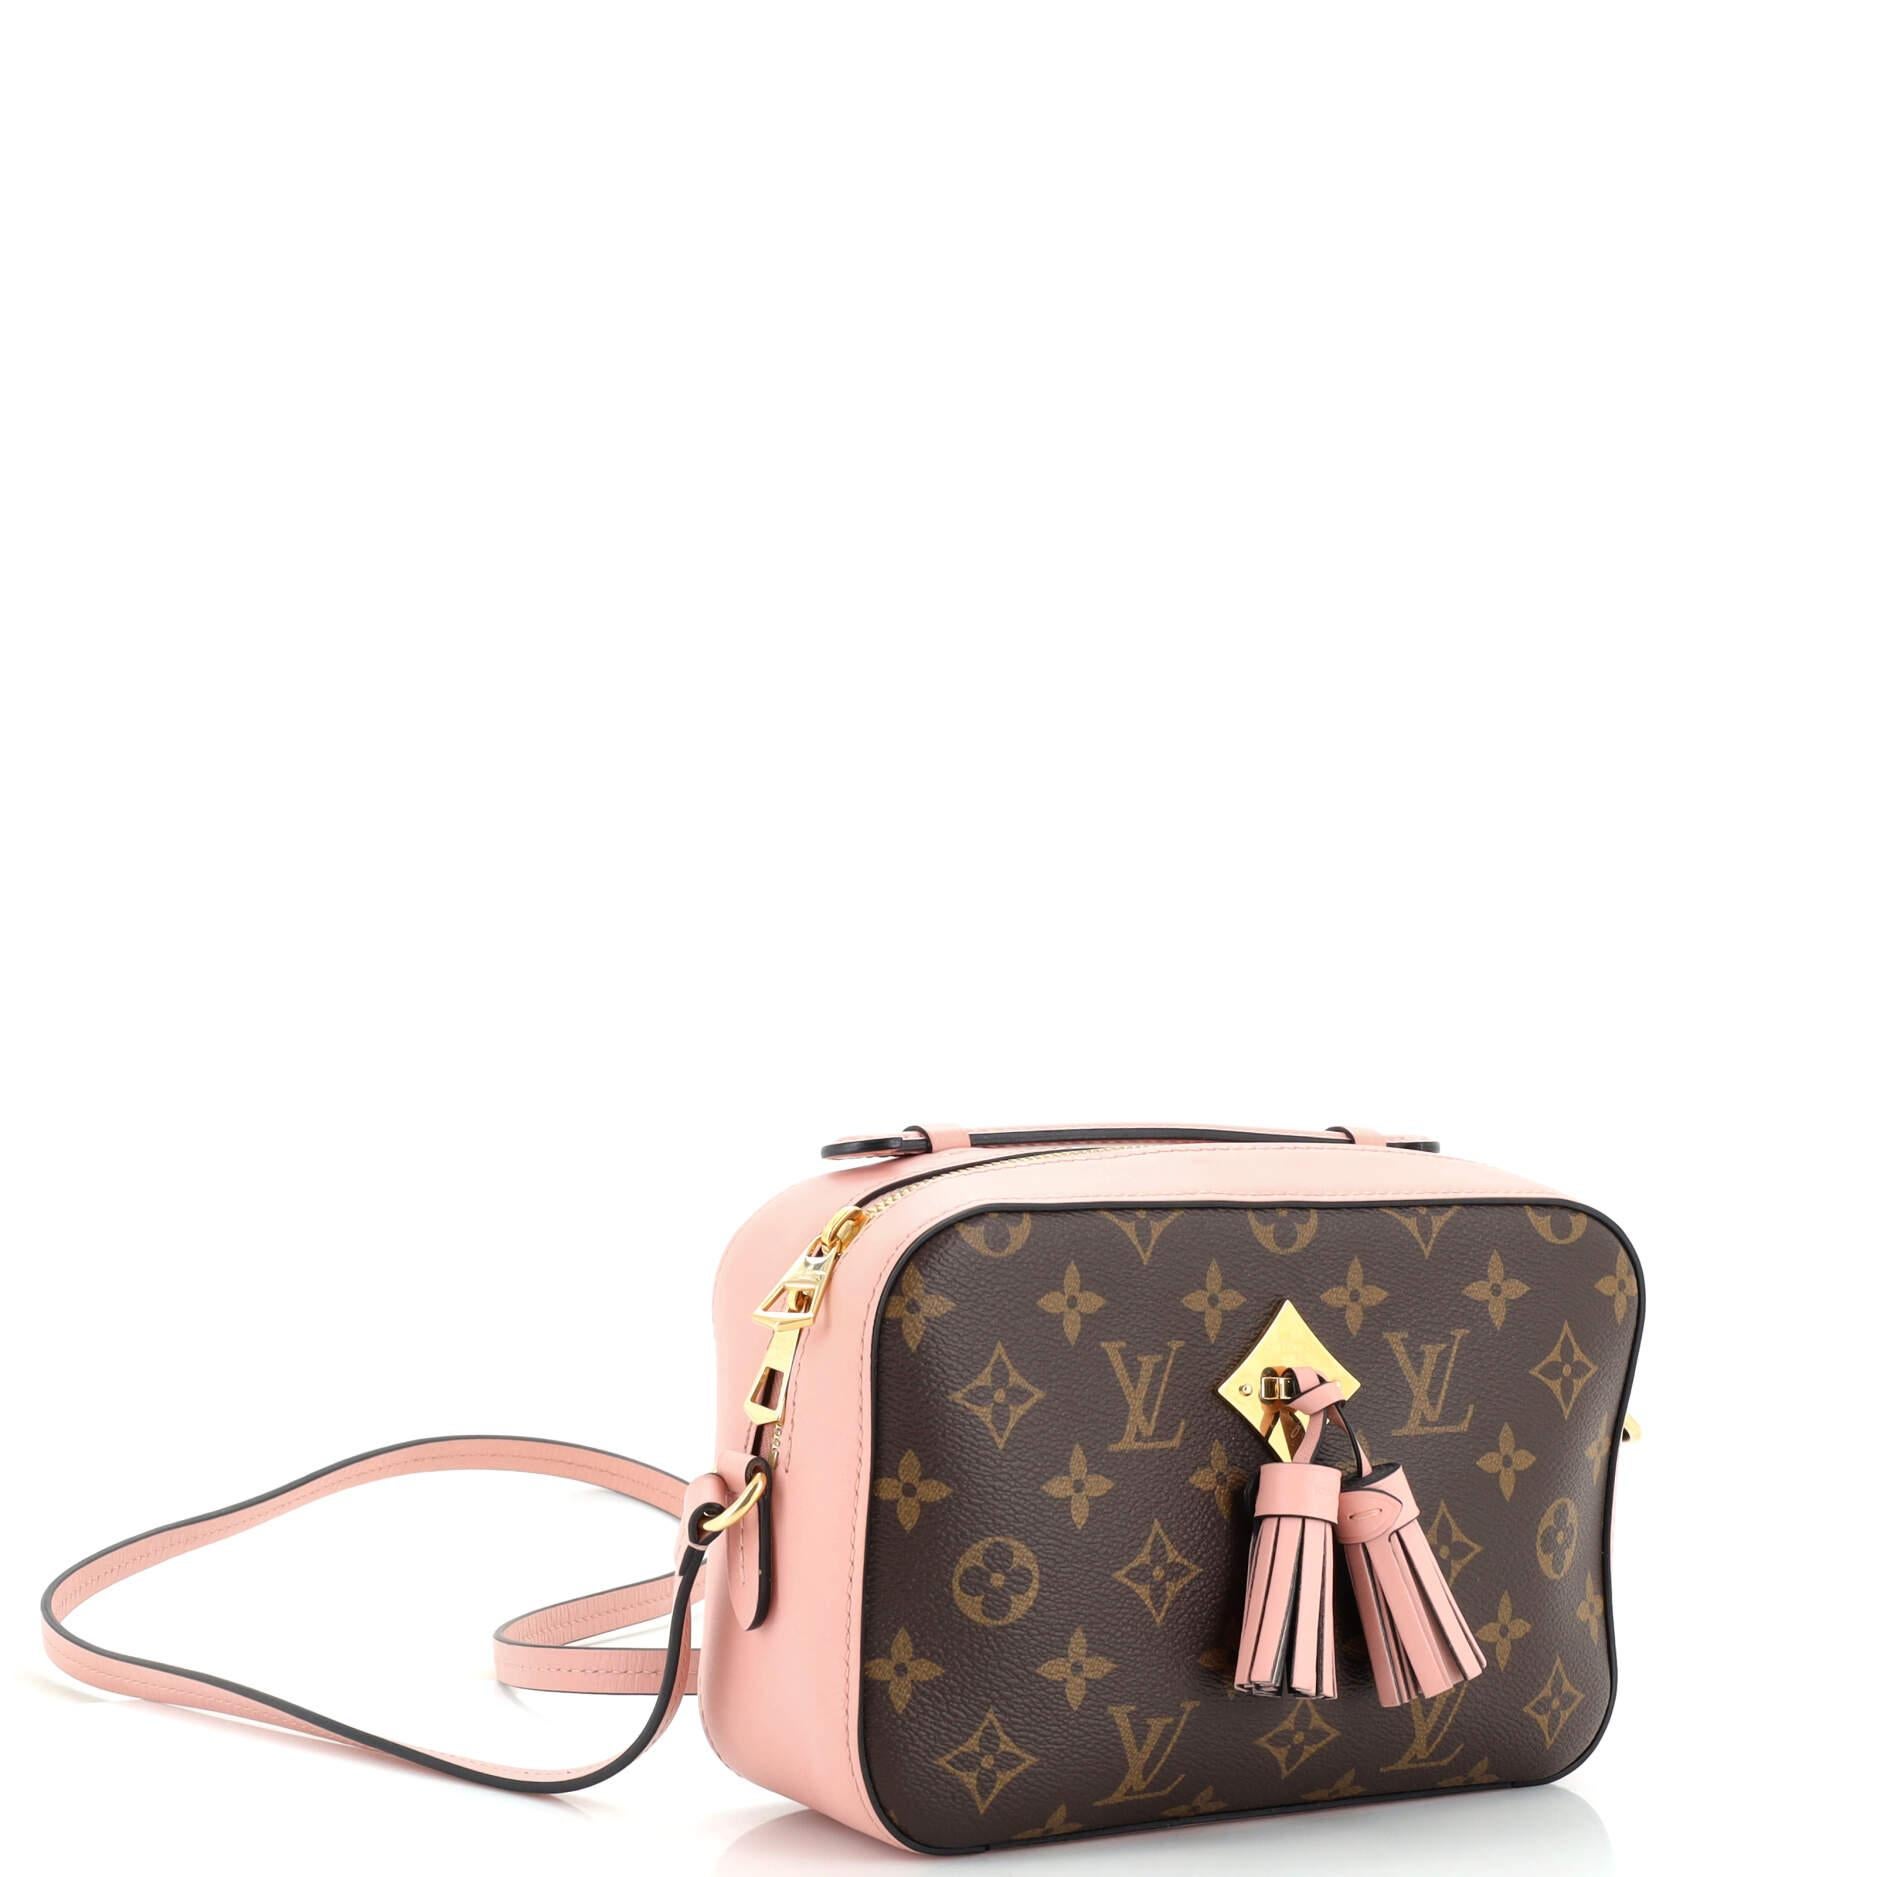 Louis Vuitton Saintonge Bag - 2 For Sale on 1stDibs  saintonge louis  vuitton, lv saintonge bag, saintonge lv bag